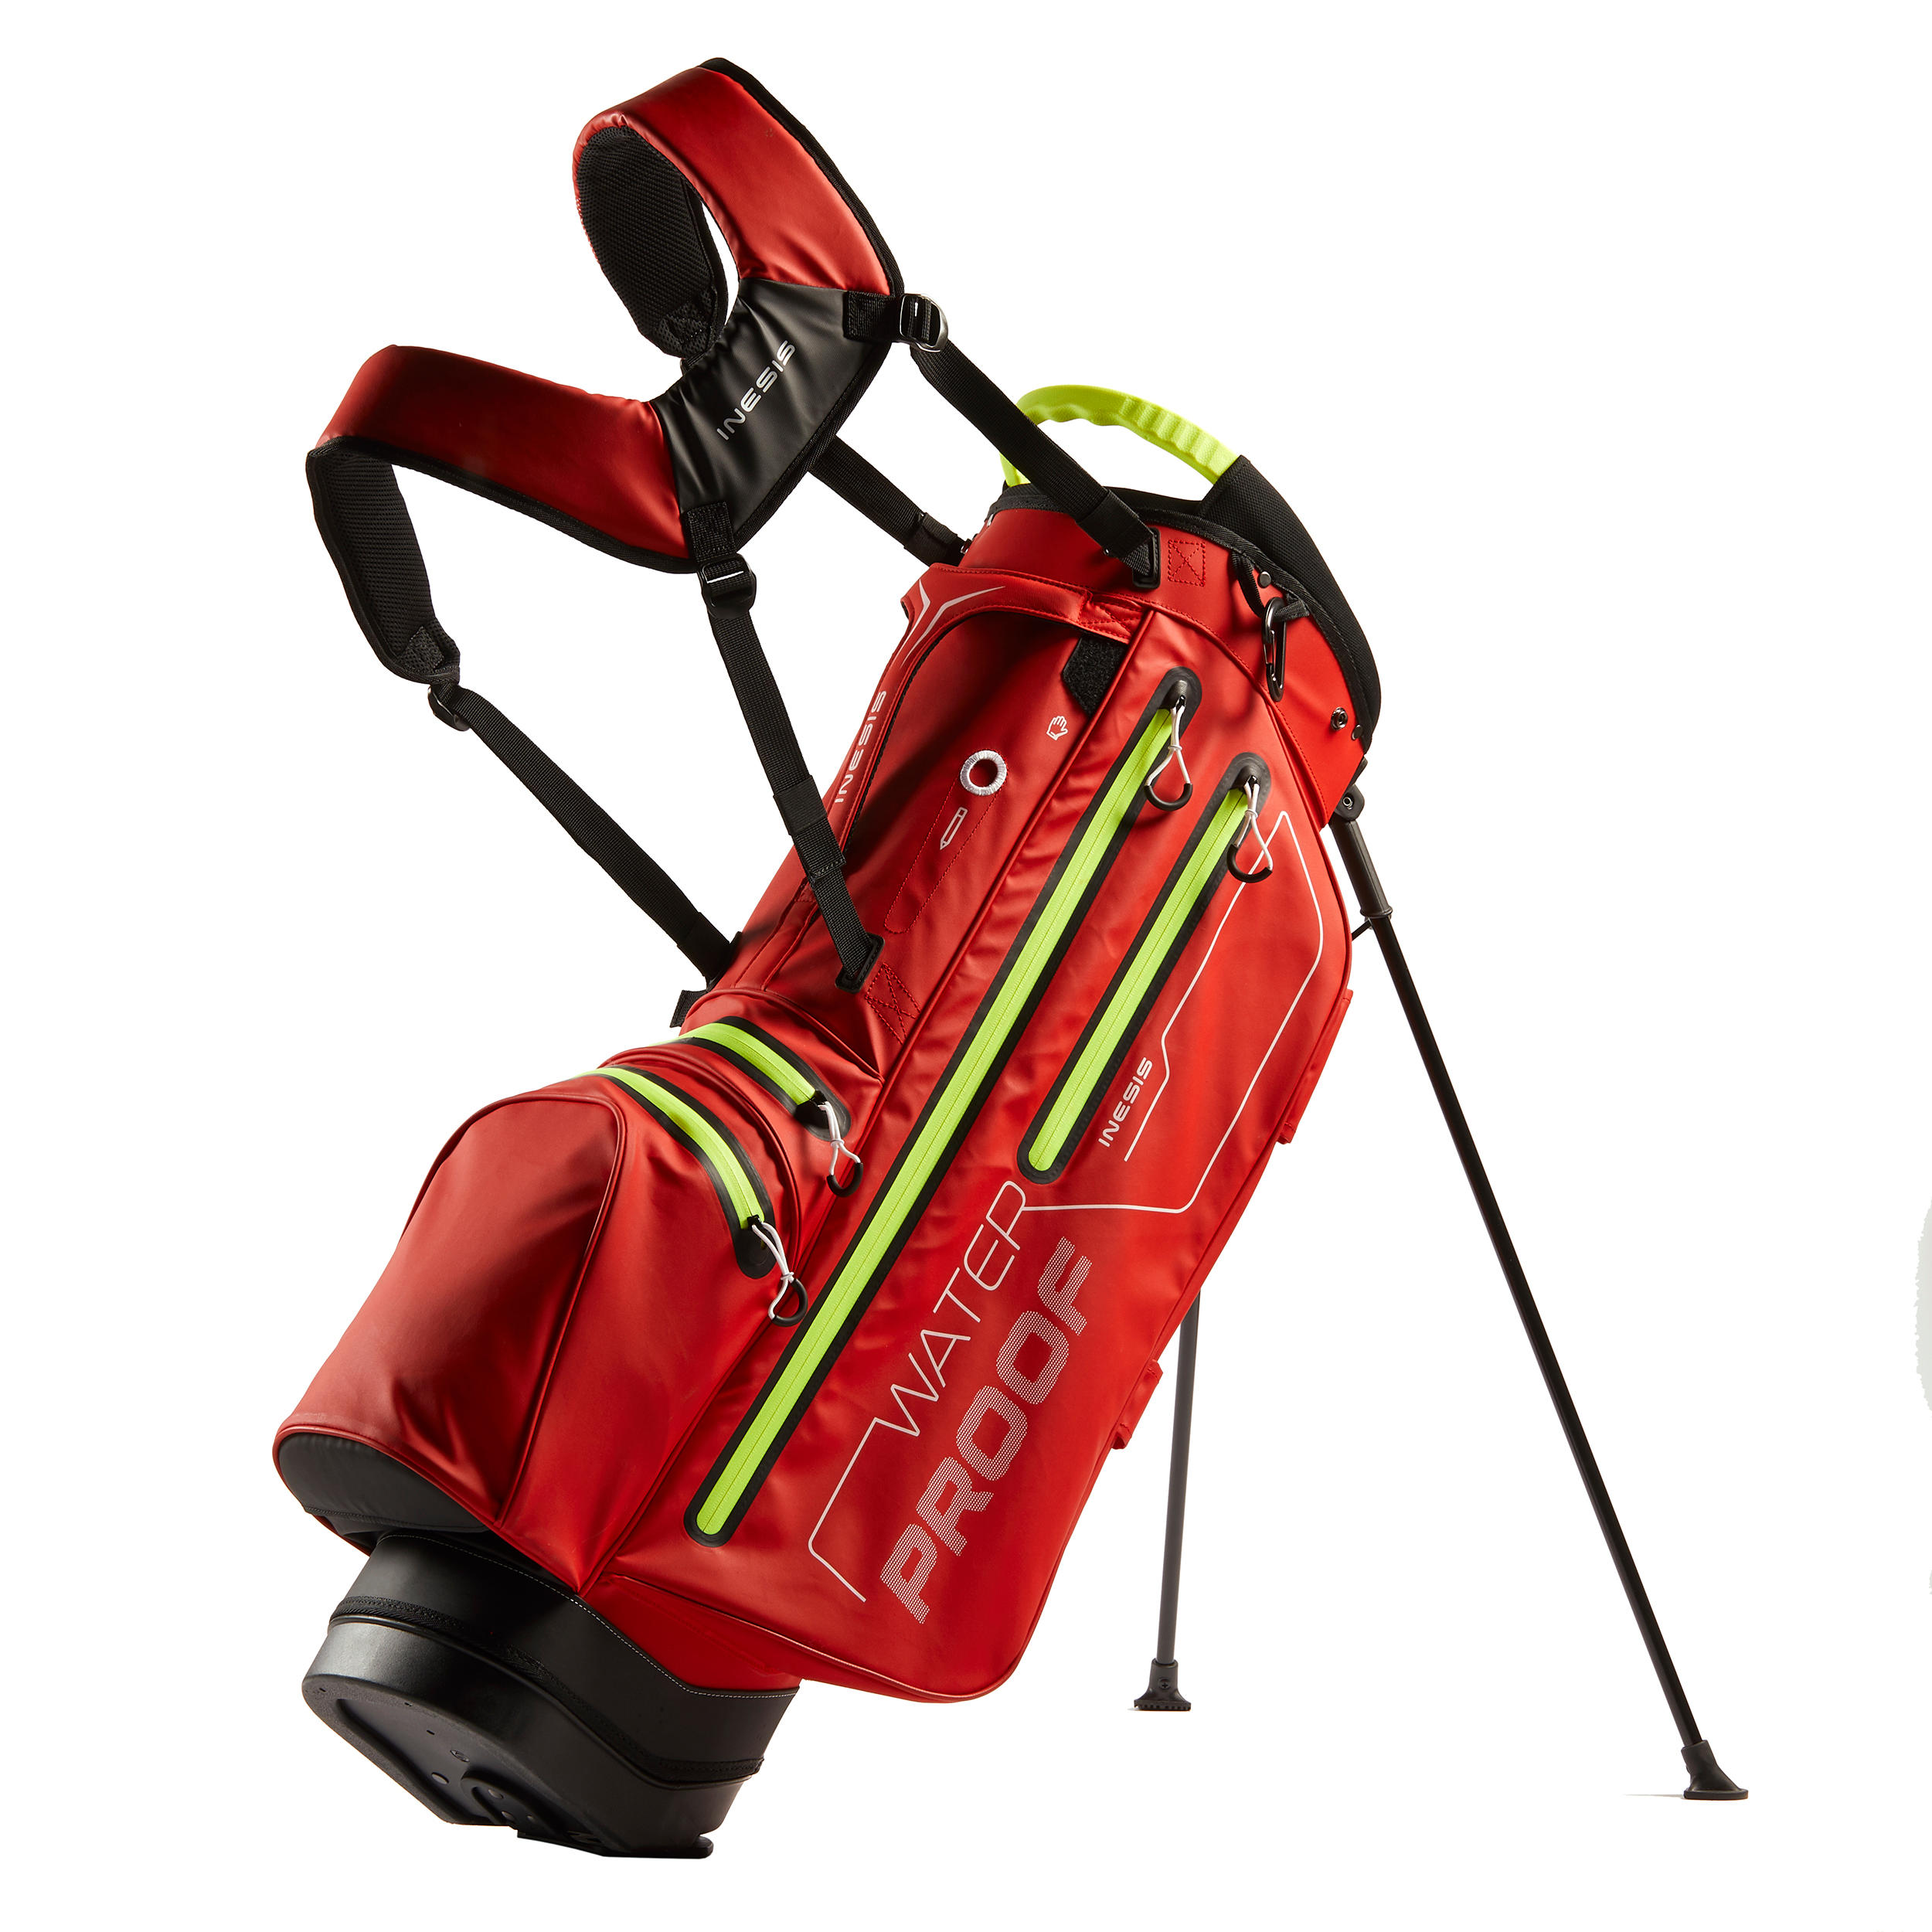 [ส่งฟรี ] ถุงกอล์ฟกันน้ำ (สีแดง/เหลือง) WATERPROOF GOLF STAND BAG - RED/YELLOW ถุงกอล์ฟกันน้ำ ถุงกอล์ฟพกพา ถุงกอล์ฟขาตั้ง กระเป๋ากอล์ฟ กระเป๋าใส่ไม้กอล์ฟ Golf Bag Golf Bag Stand Golf bag cart